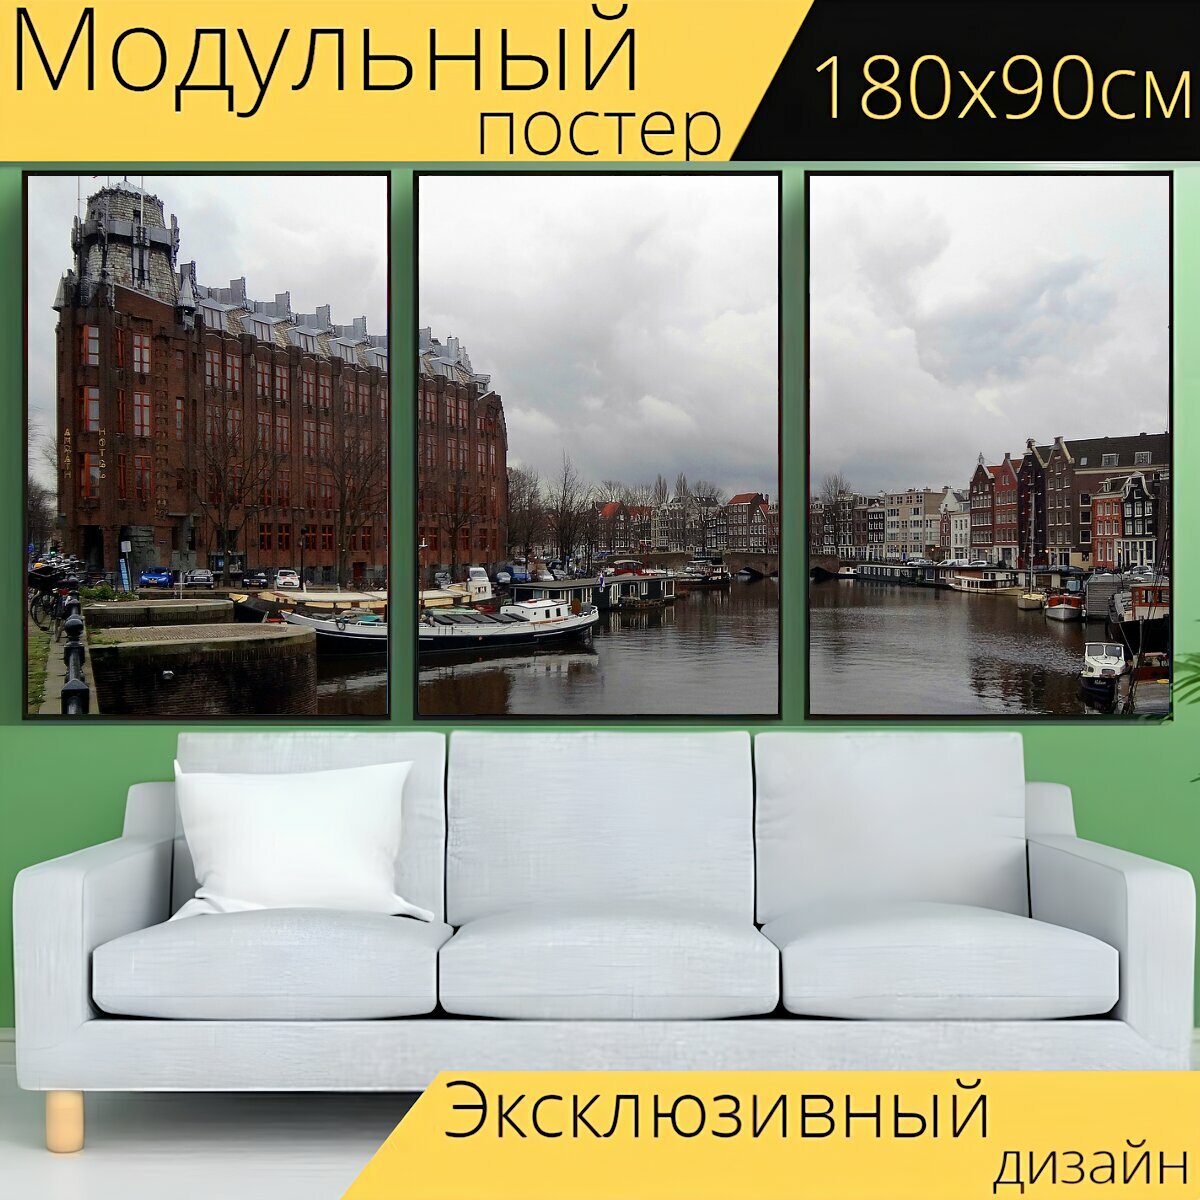 Модульный постер "Канал, город, плавучие дома" 180 x 90 см. для интерьера